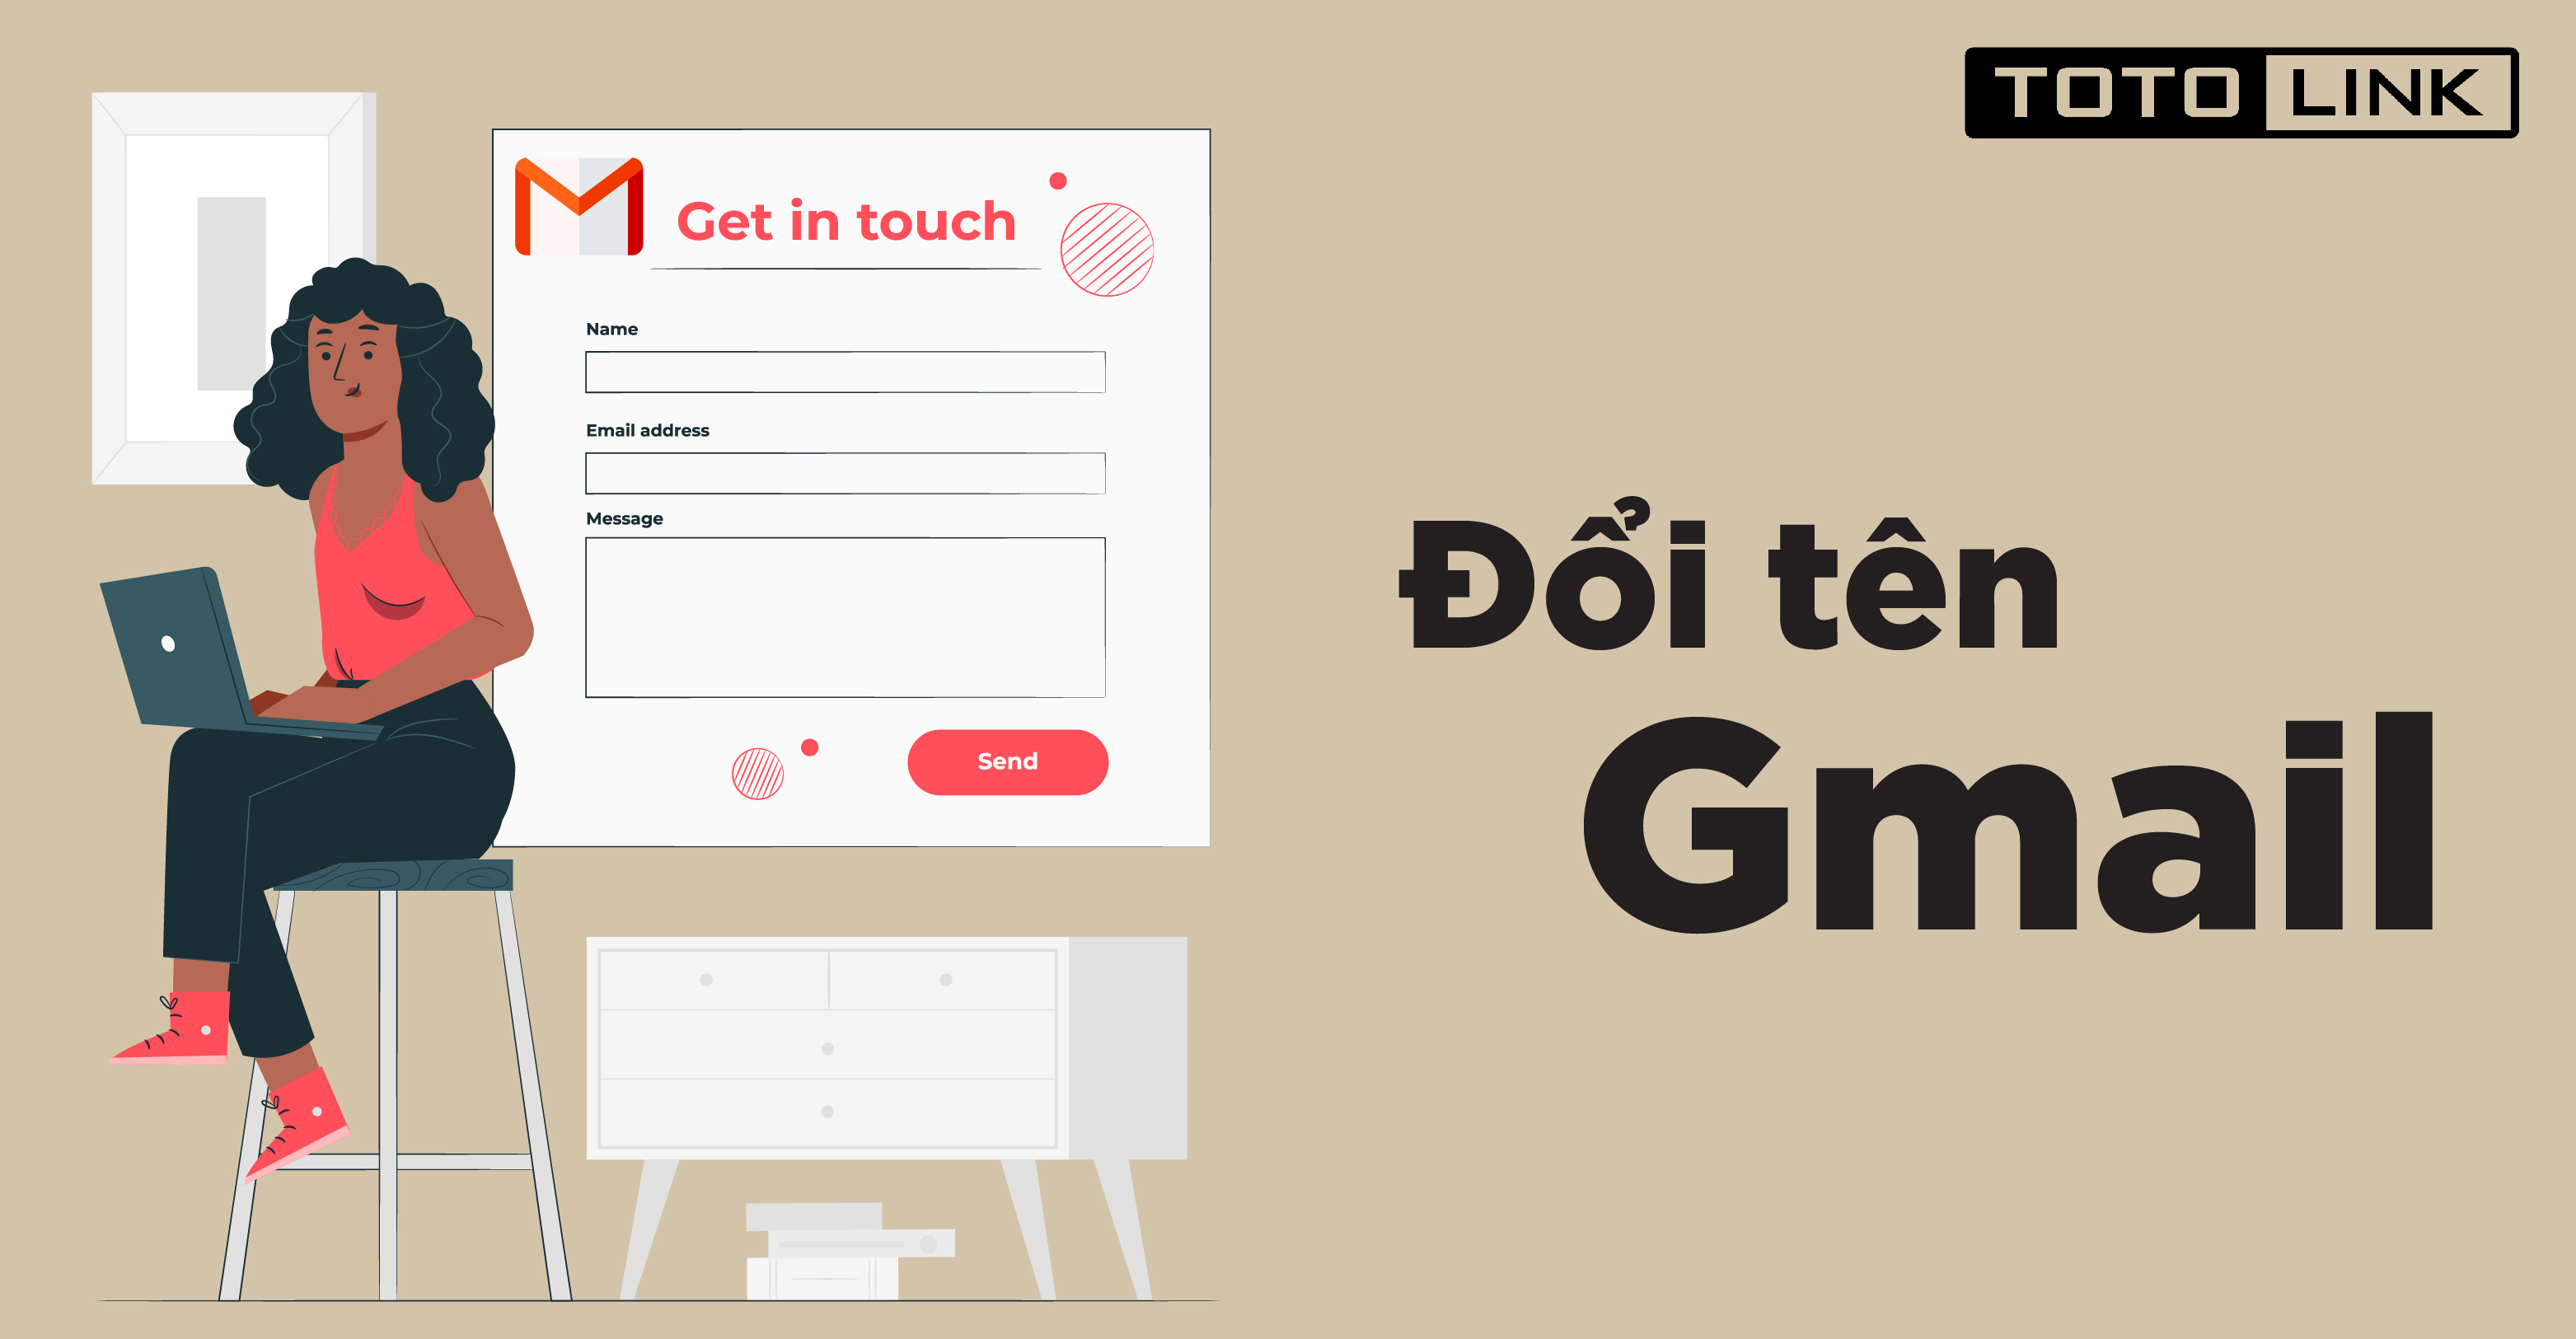 Hướng dẫn cách đổi tên Gmail trên máy tính và điện thoại di động - TOTOLINK Việt Nam